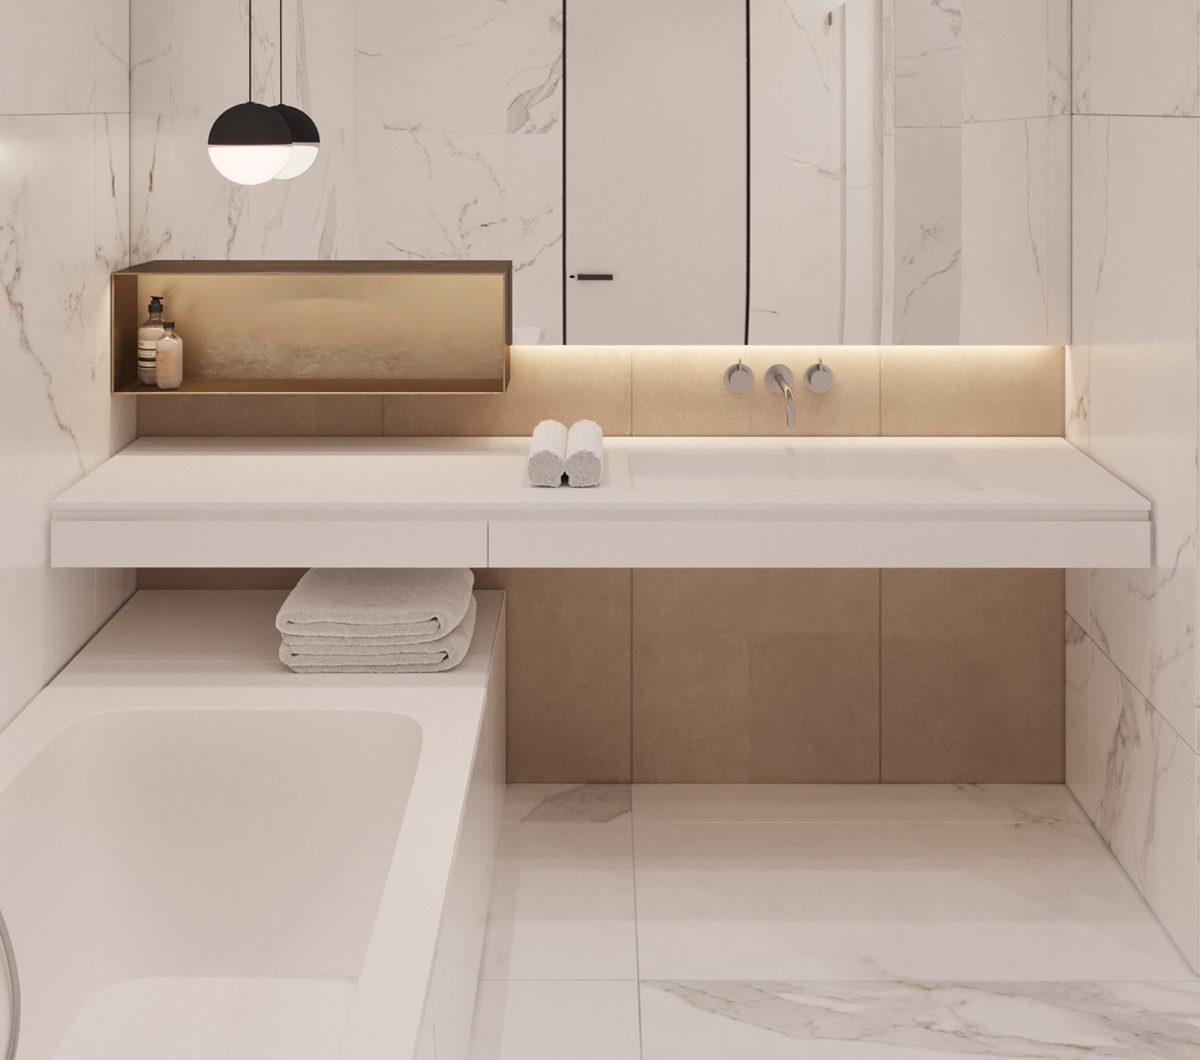 Bathroom Design by Daria Babii